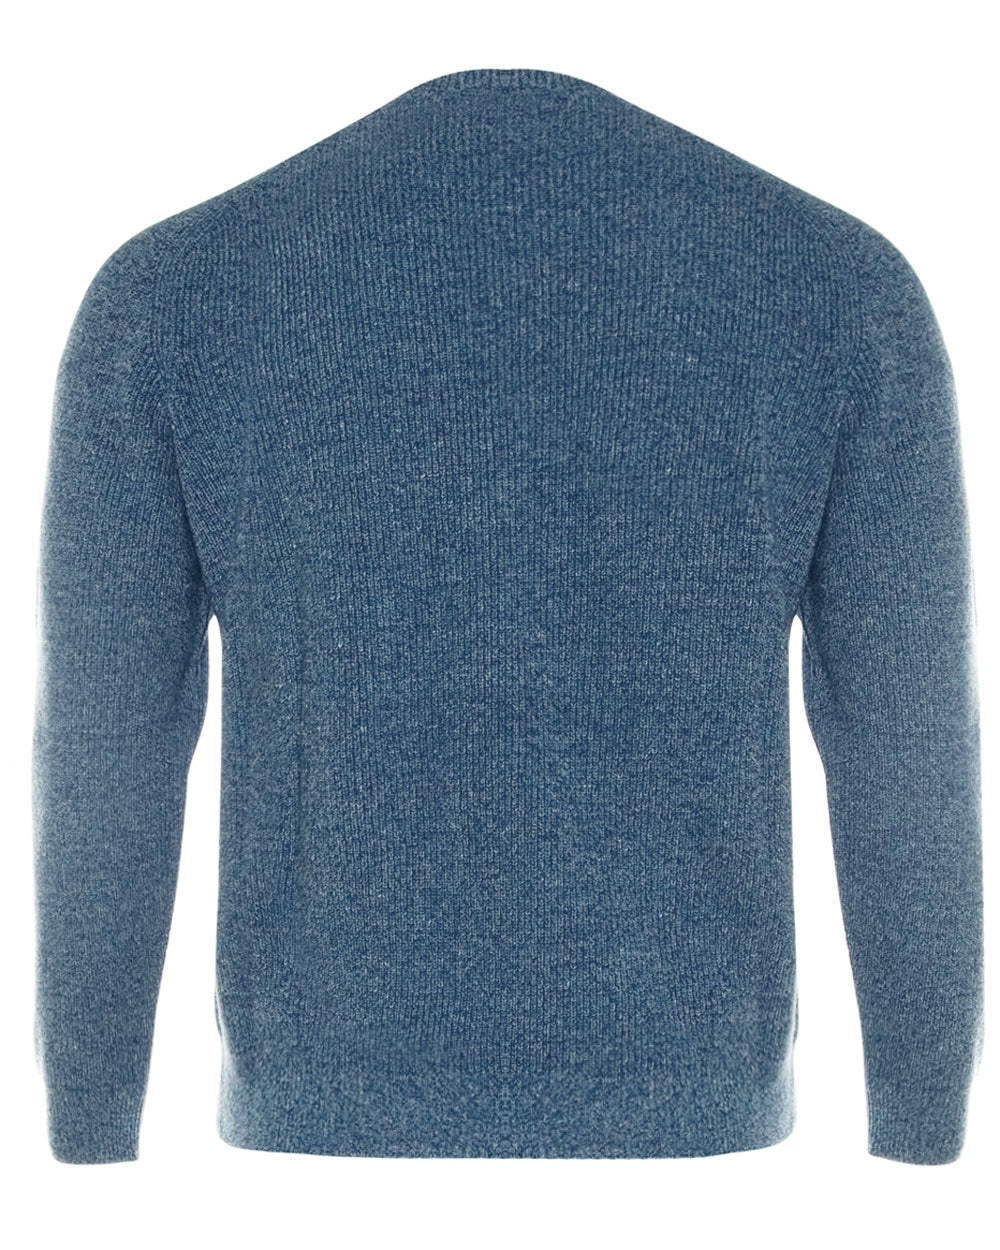 Amalfi Blue Sweater